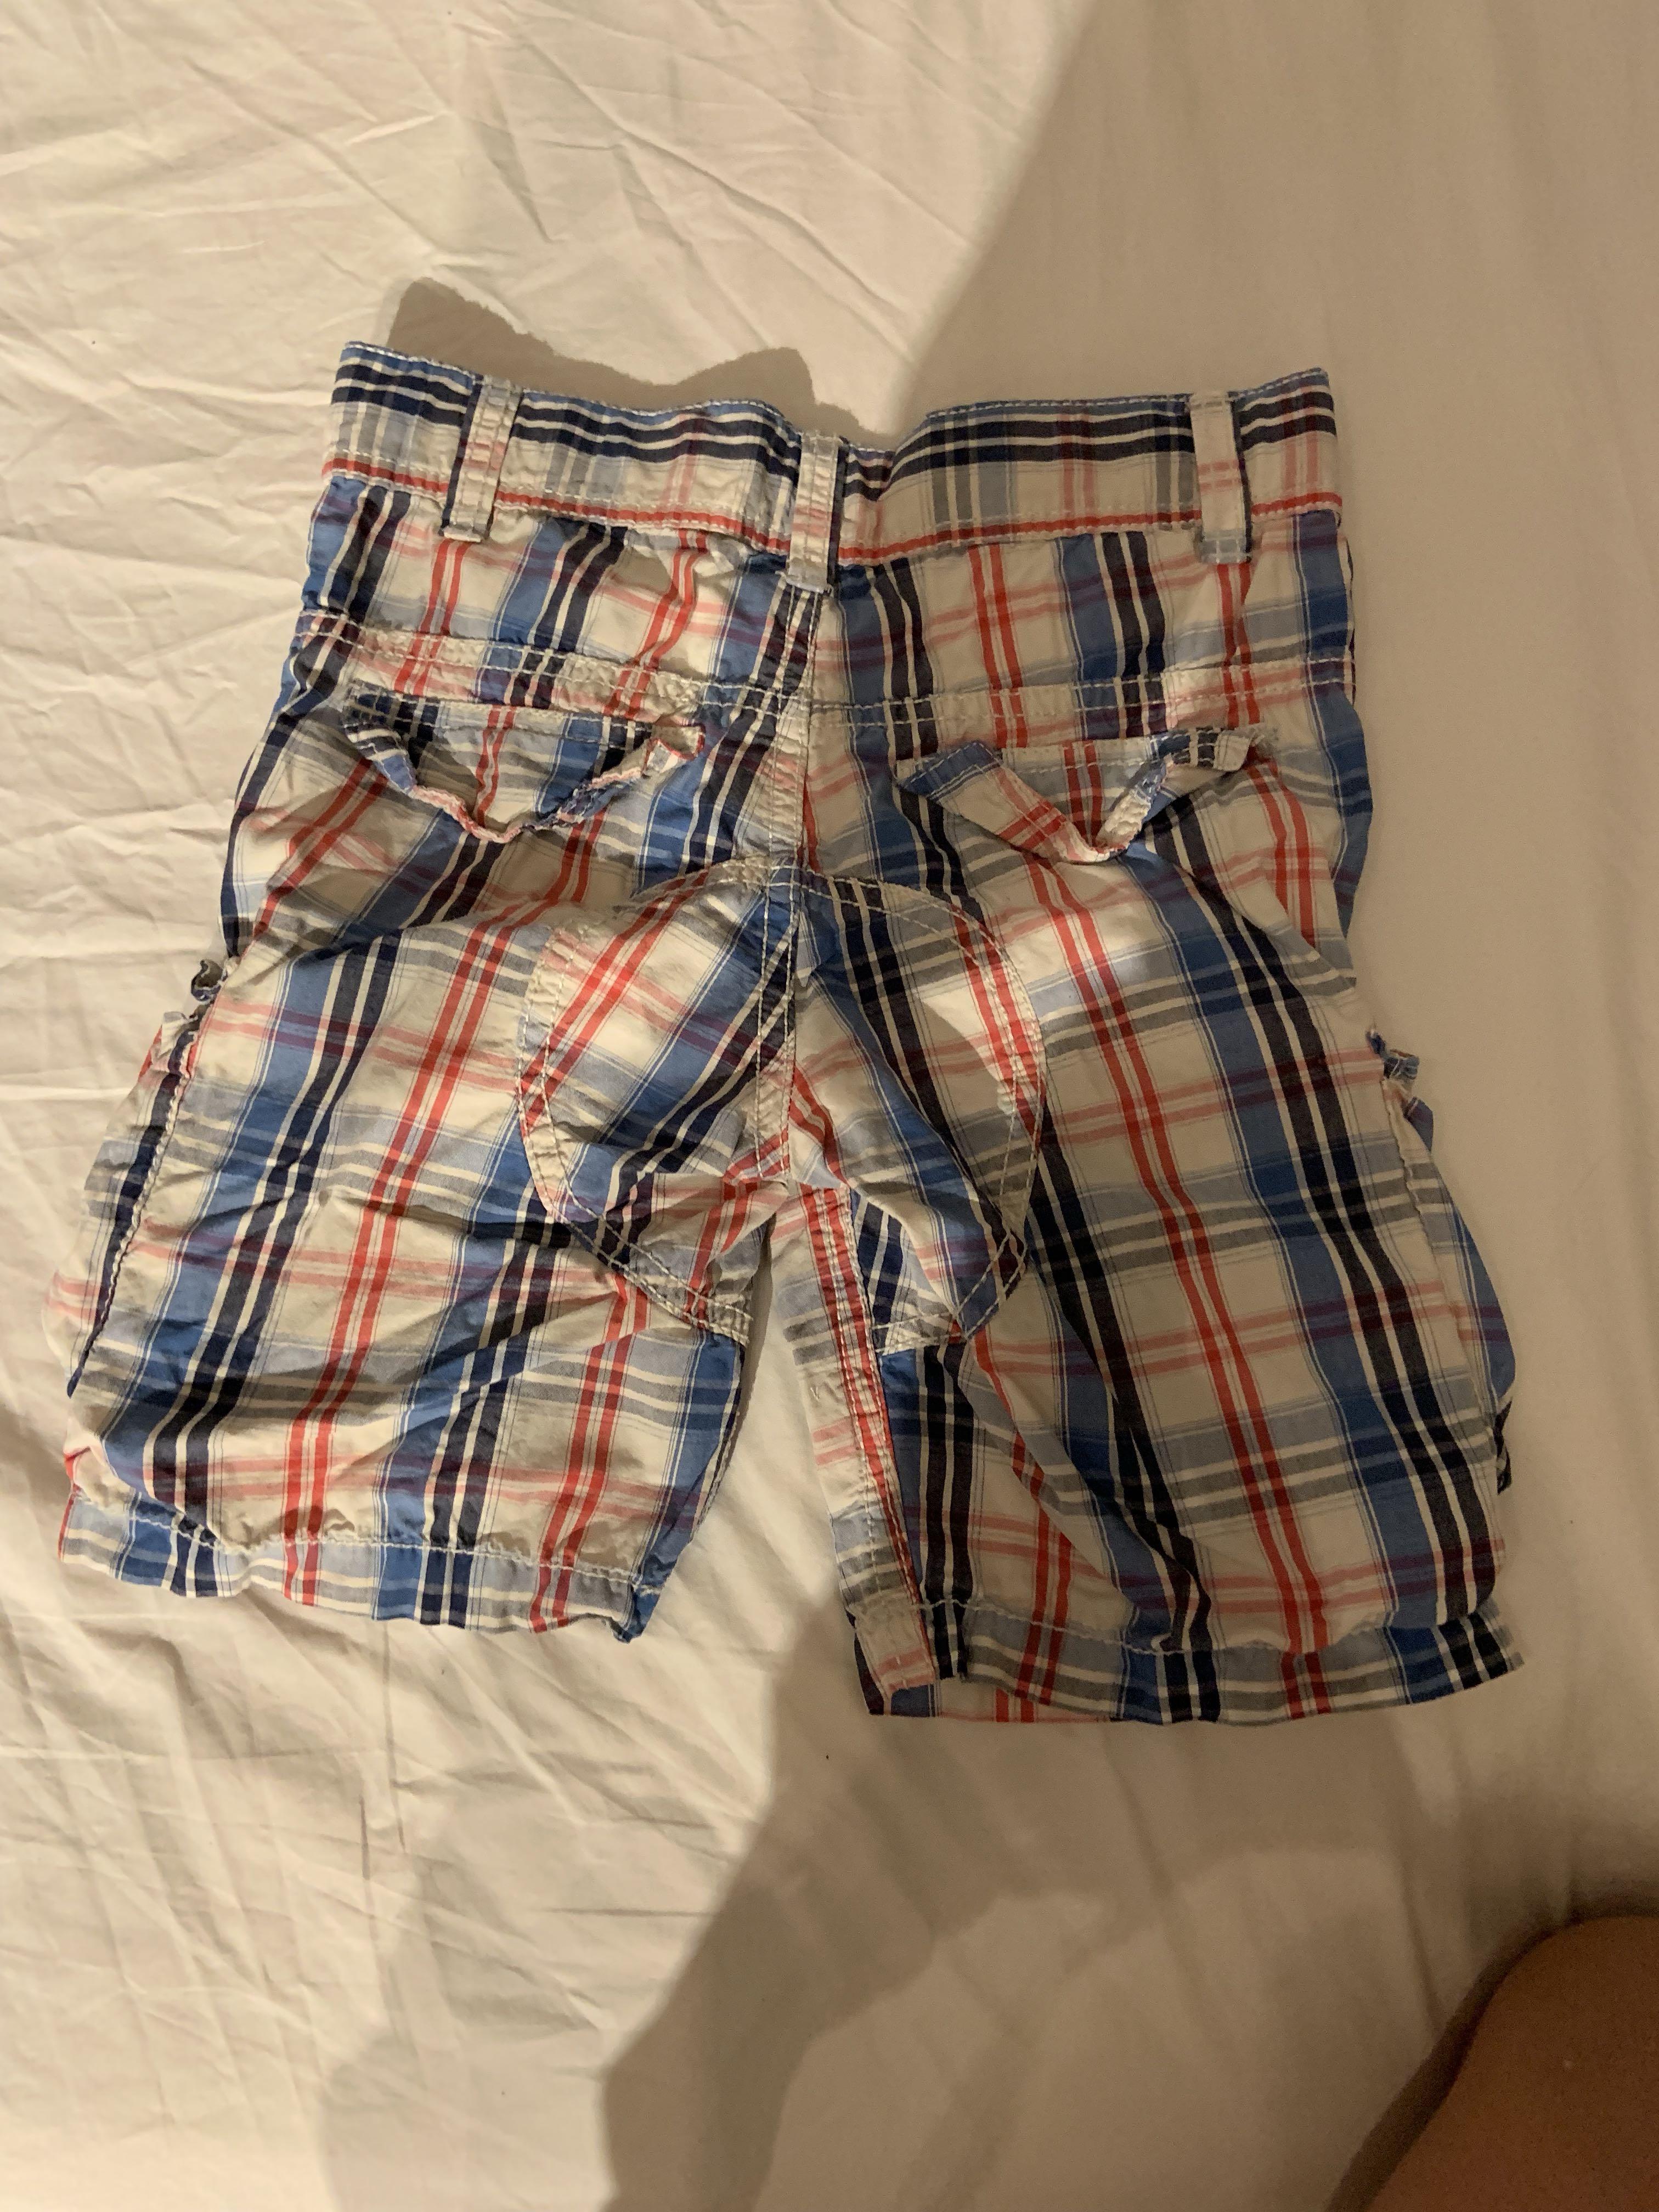 gap shorts sale